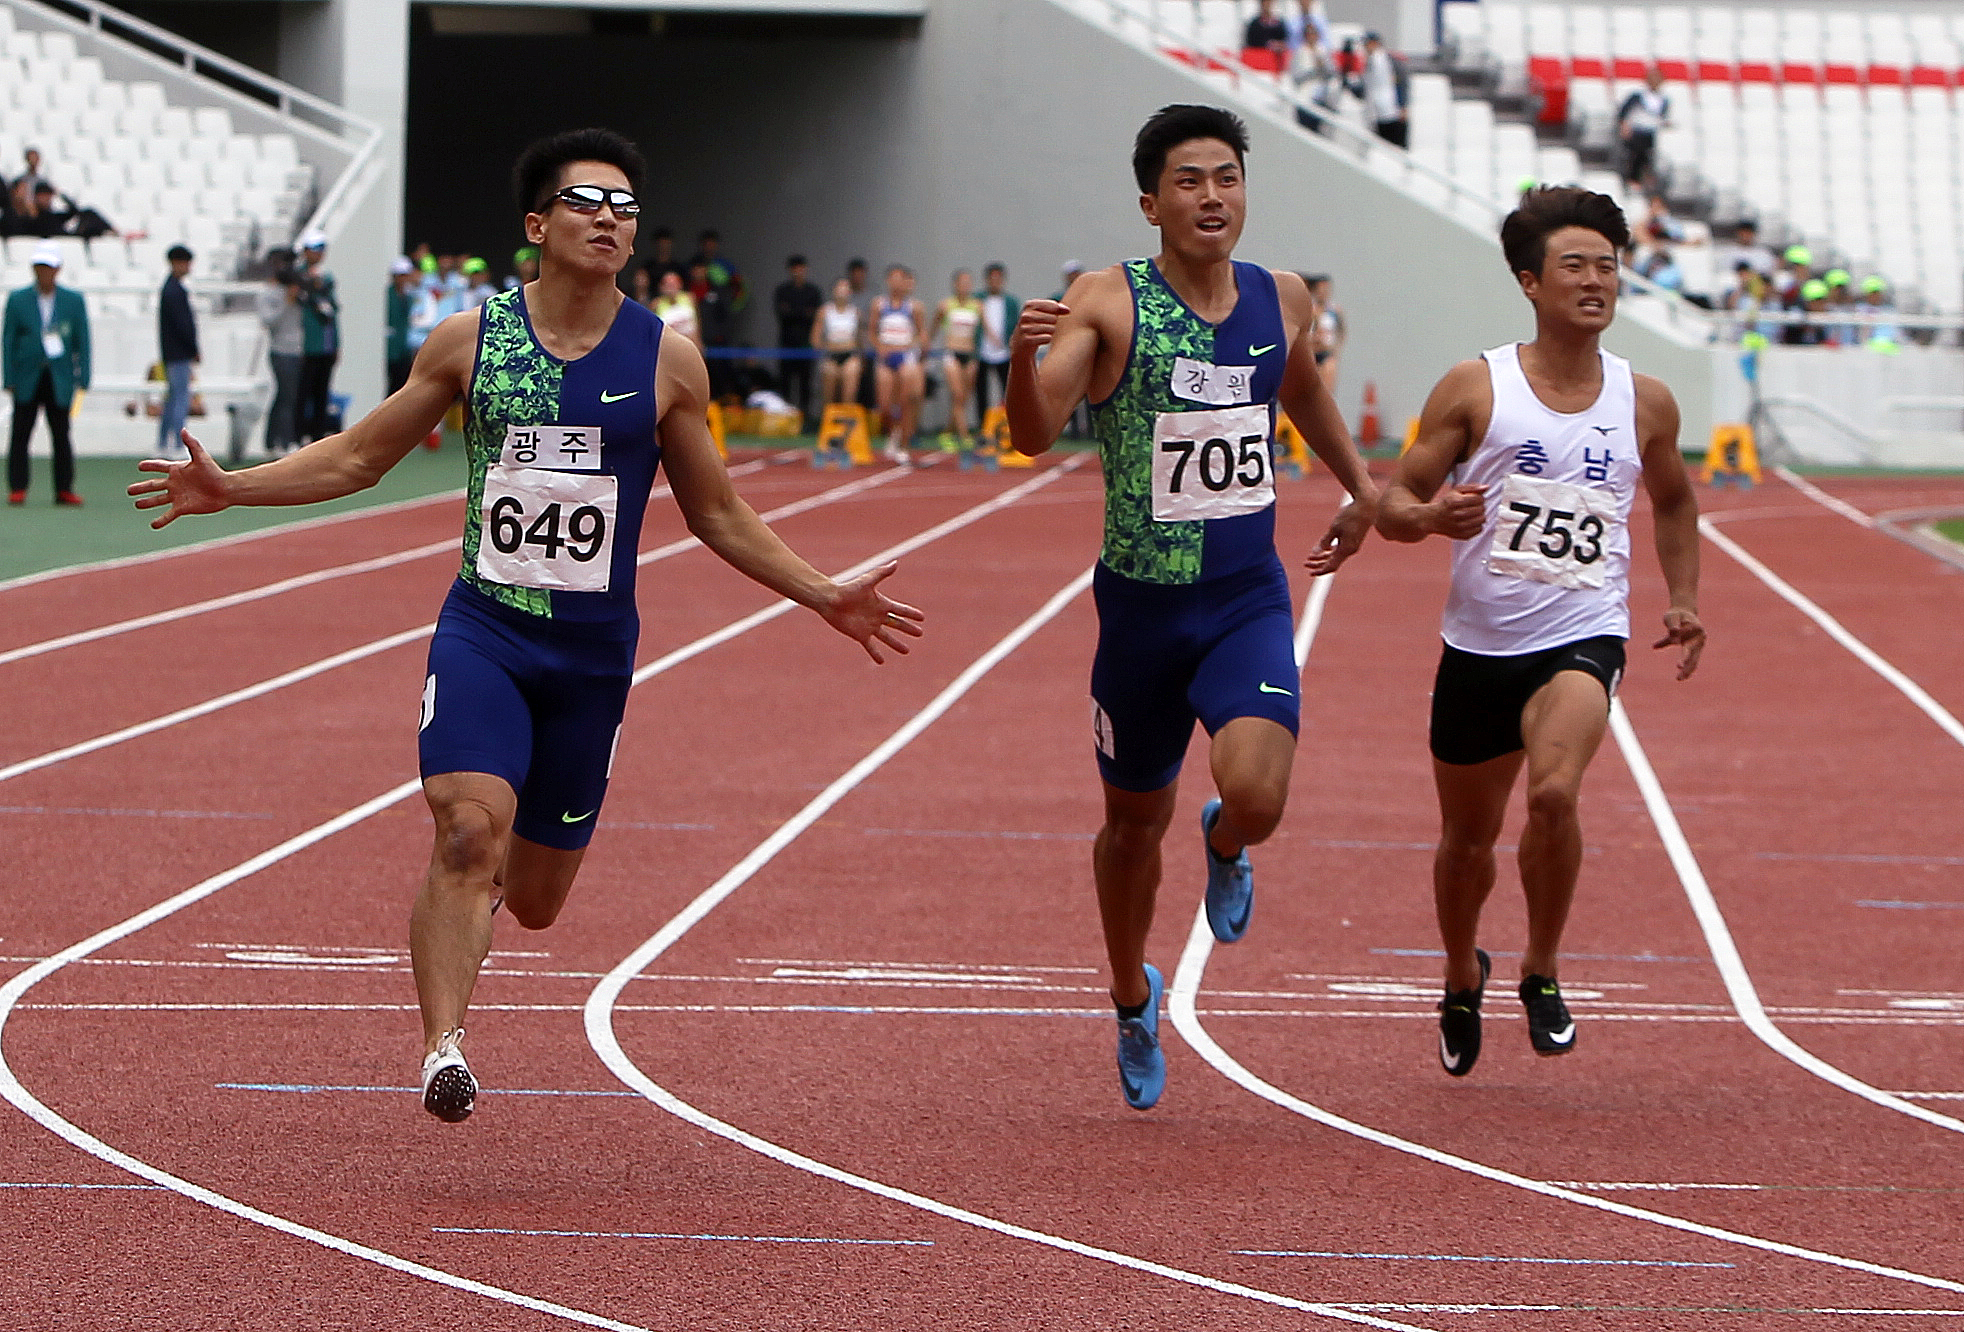 남자부 100m 결승에서 1위로 피니시하는 김국영(사진 왼쪽)